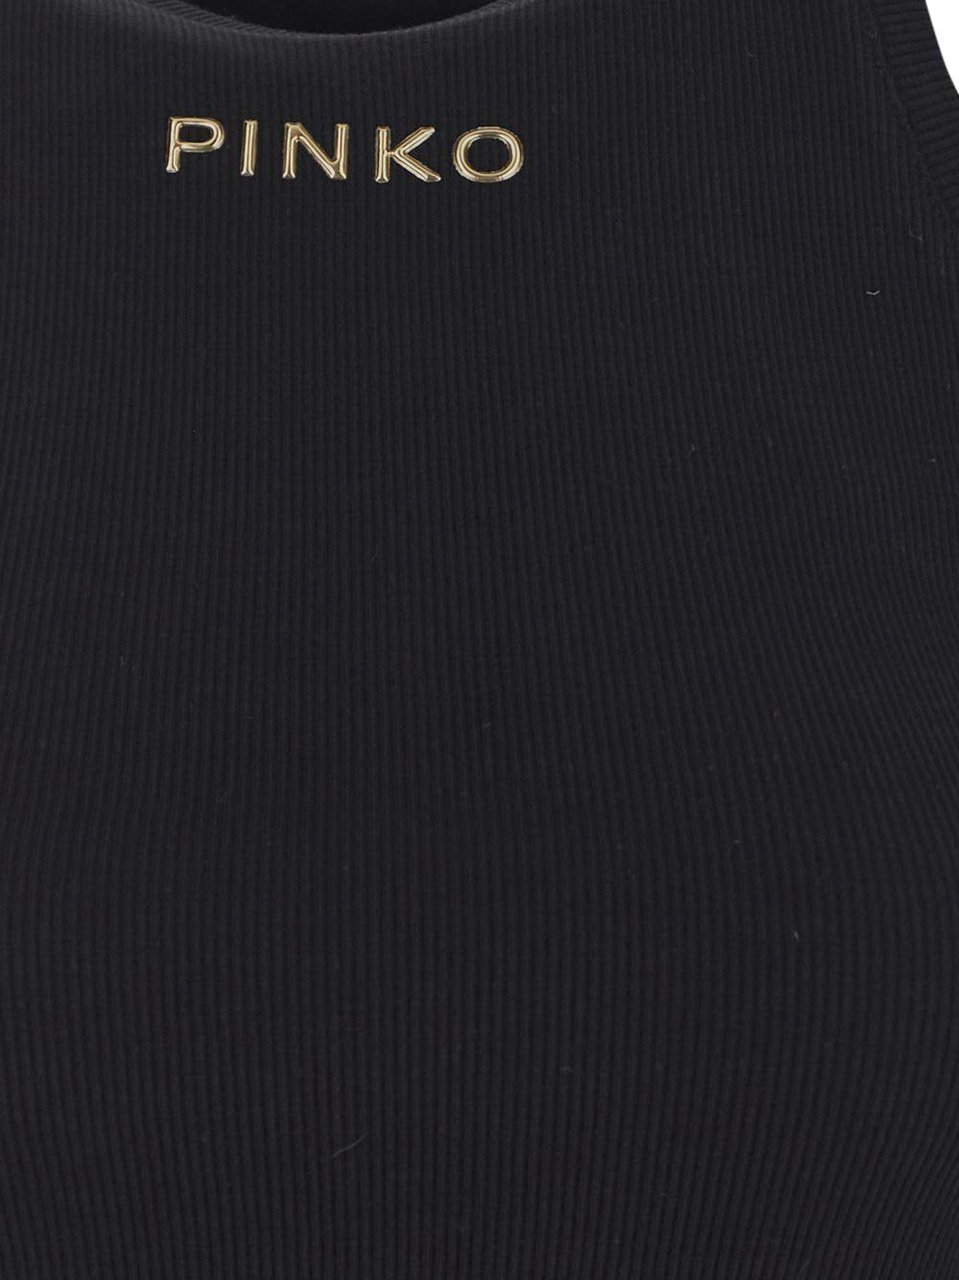 Pinko Logo Tank Top Zwart